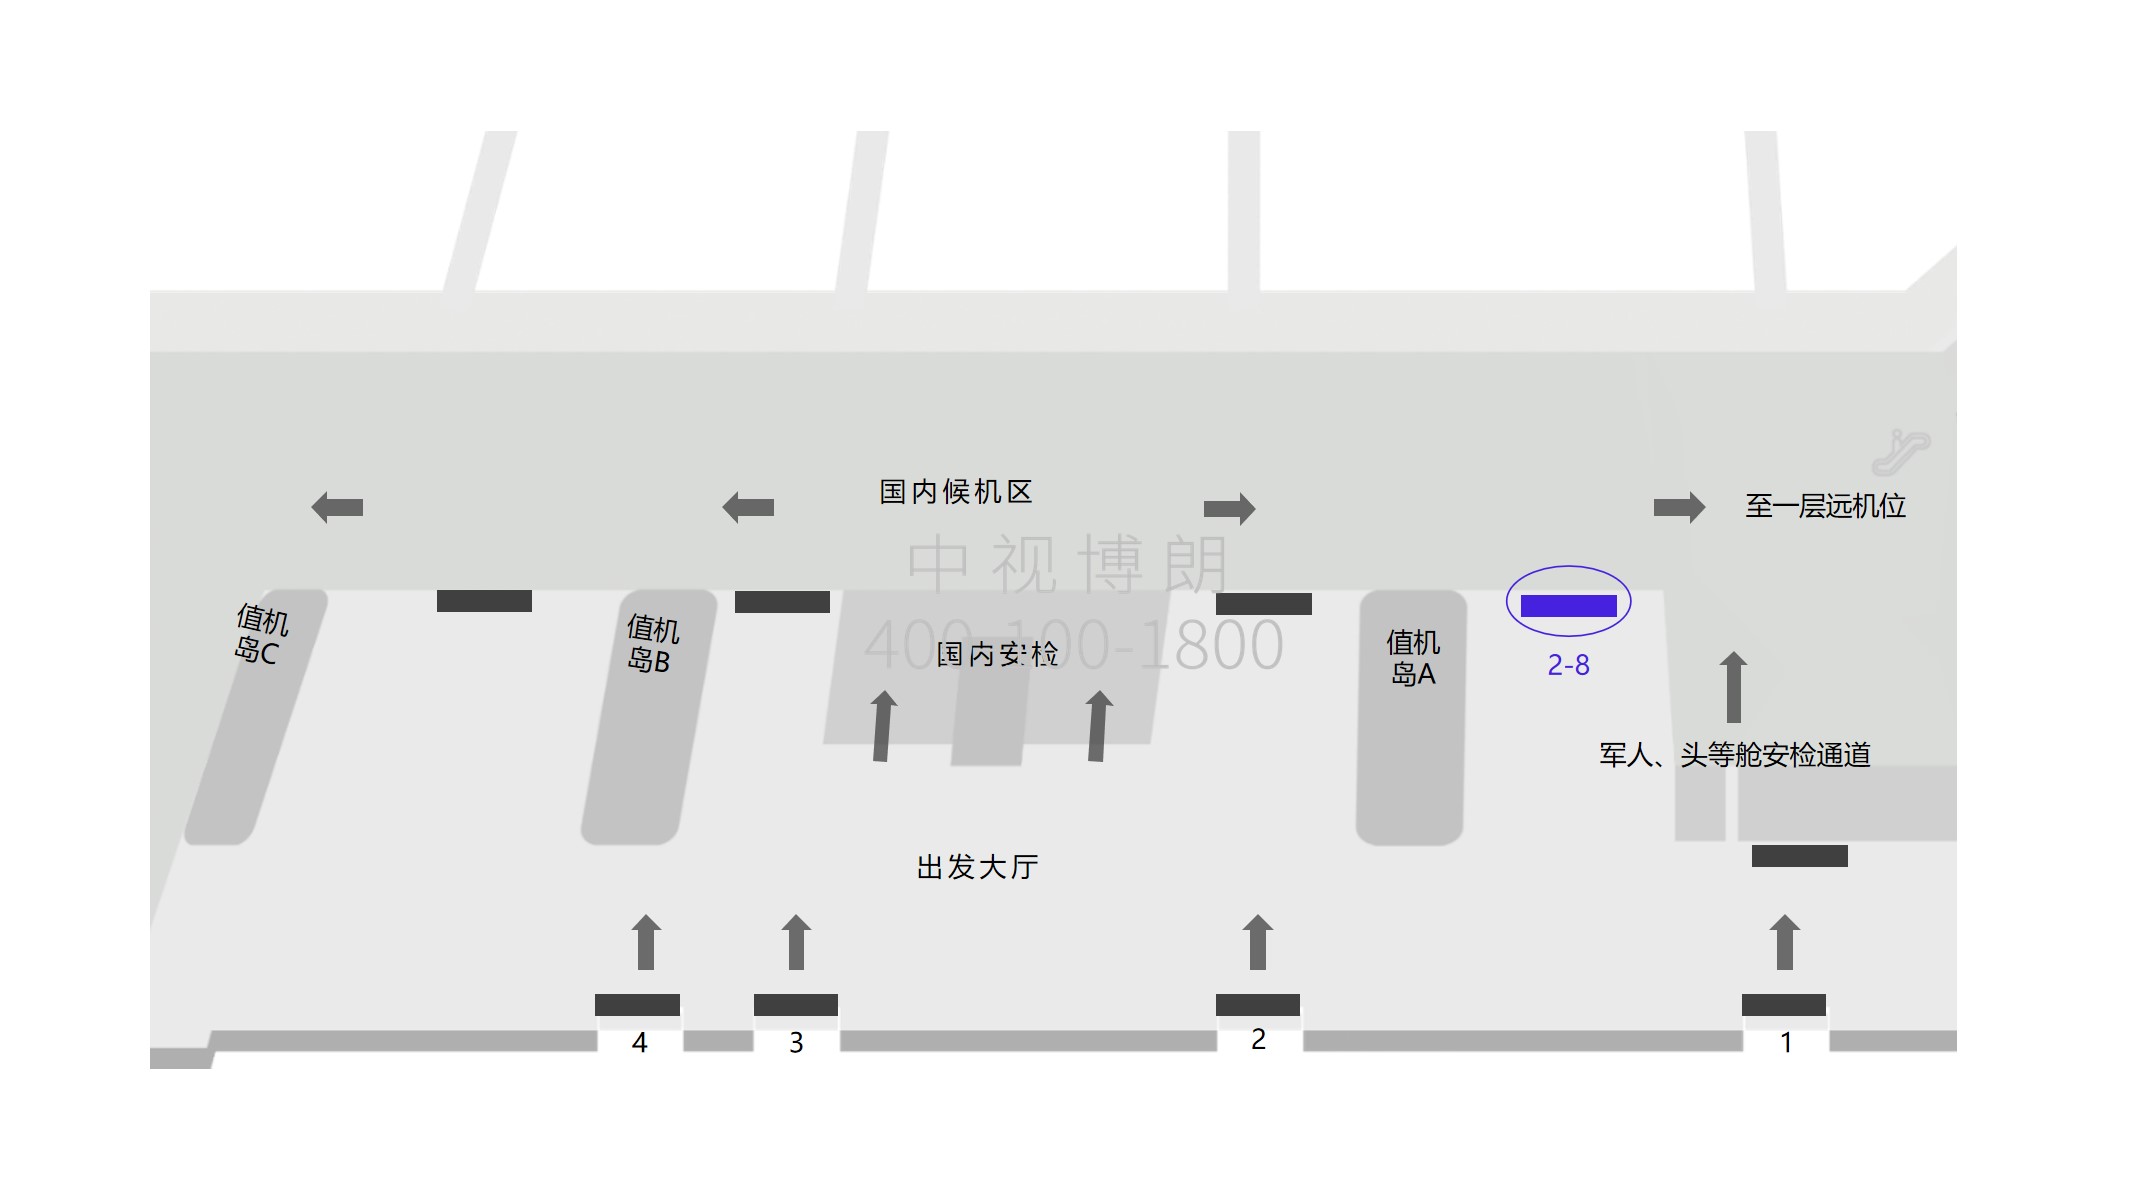 三亚机场广告-2-8出发大厅安检口外灯箱点位图